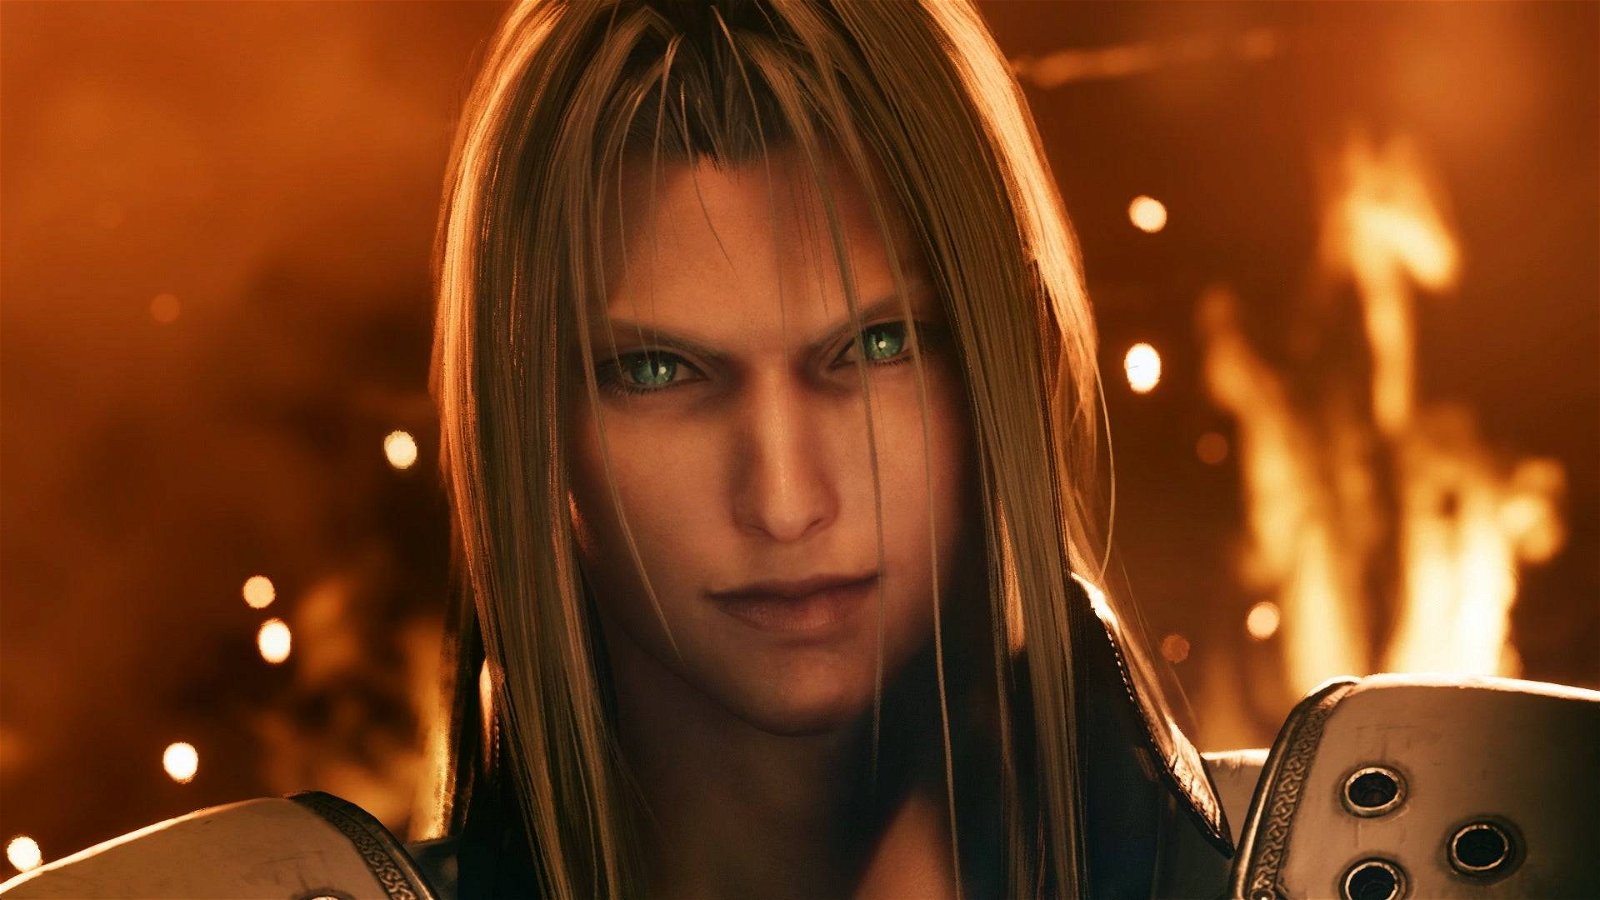 Immagine di Final Fantasy 7 Remake arriva su Xbox One? No, è stato un errore